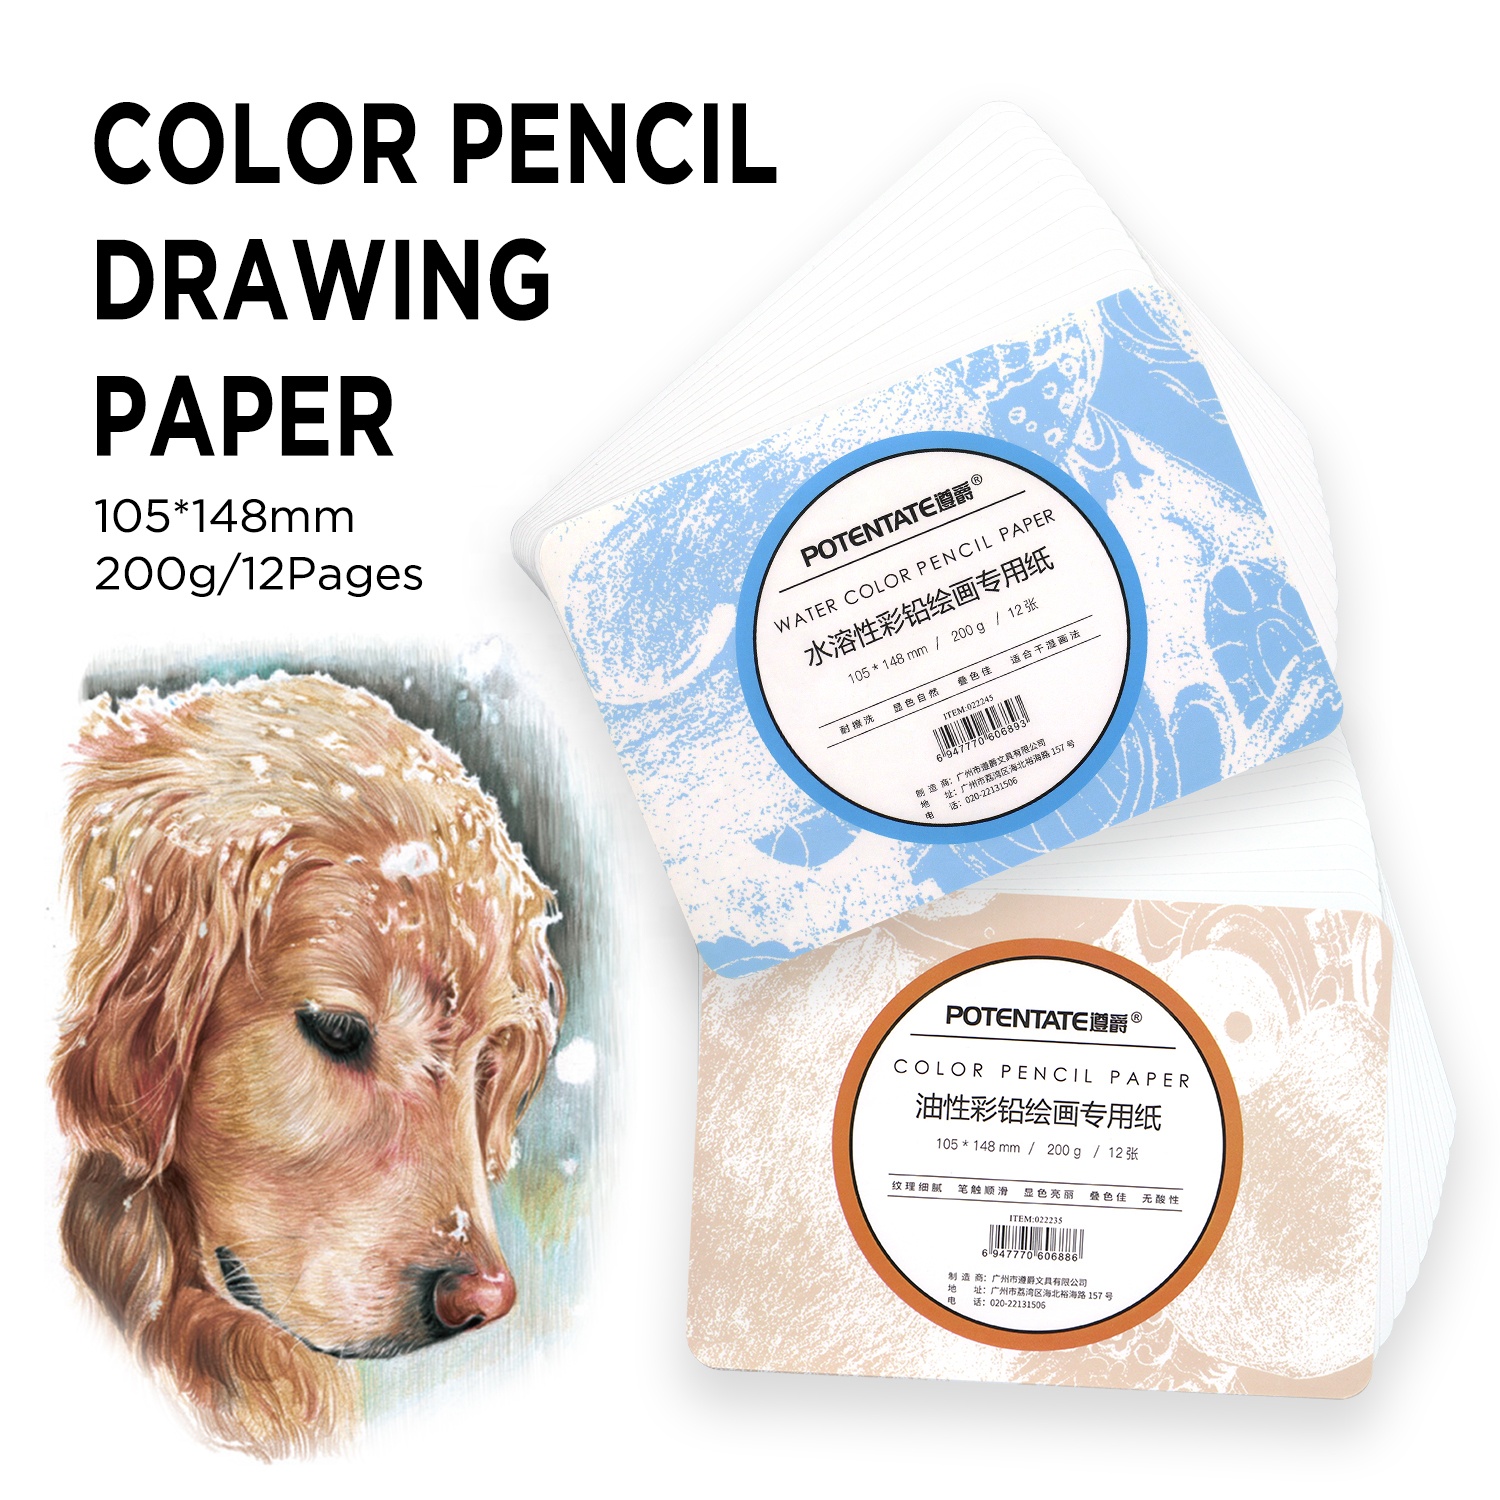 Papel de dibujo de boceto premium potente A6 para lápiz de color aceitoso y agua de color lápiz200gsm de papel/12 páginas1